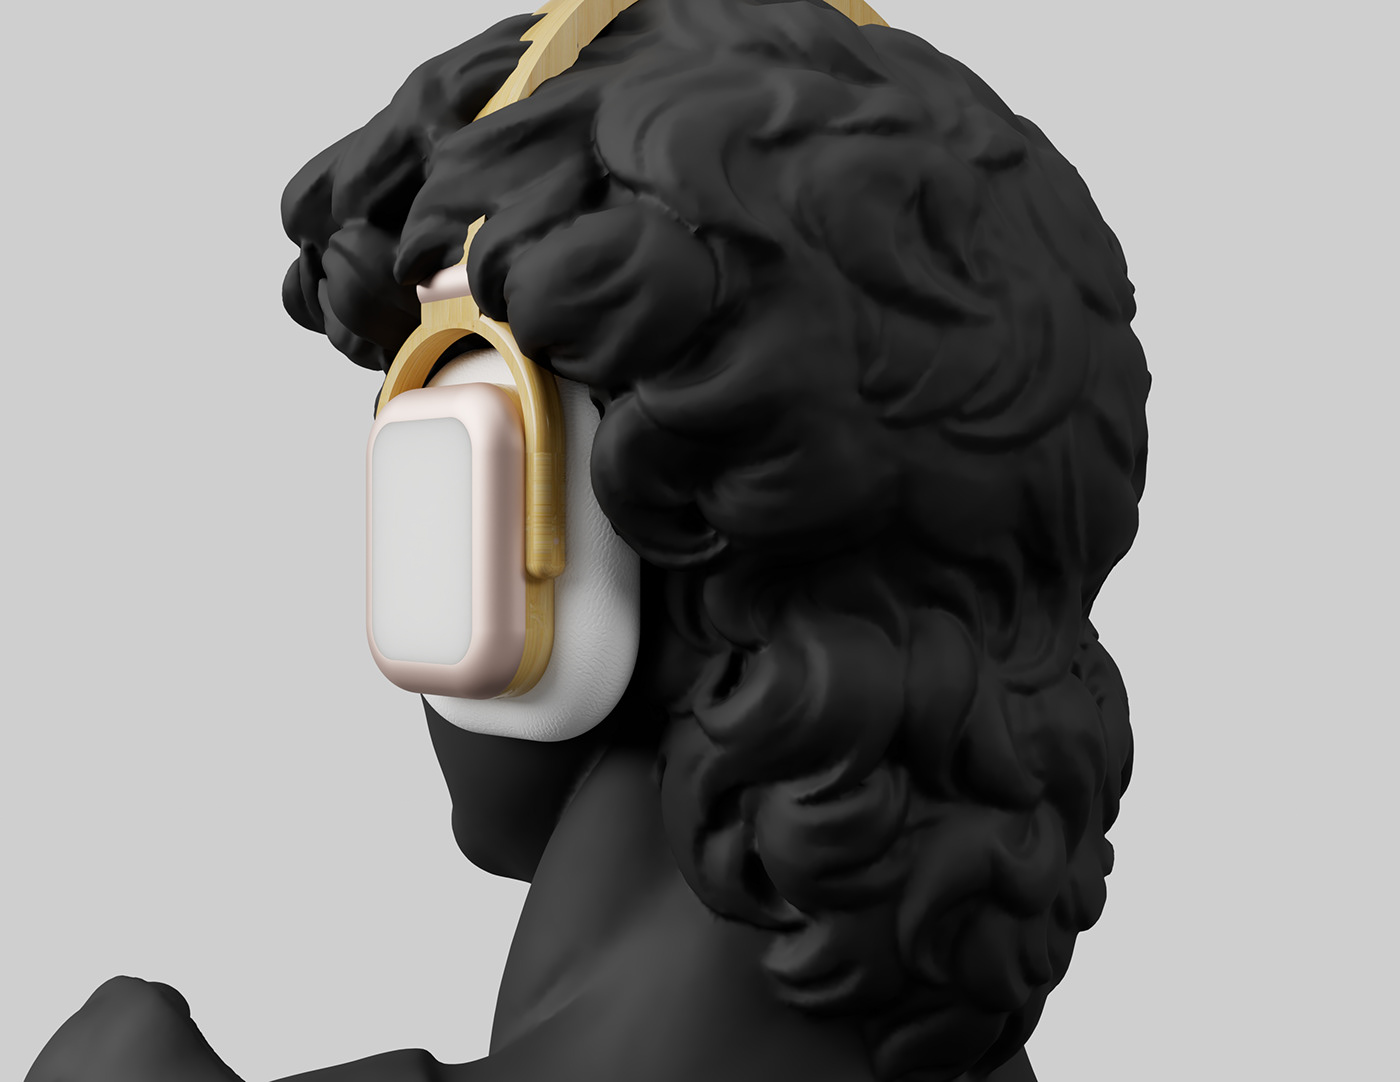 headphones sculptures concepts 3D concept art Technology product design 